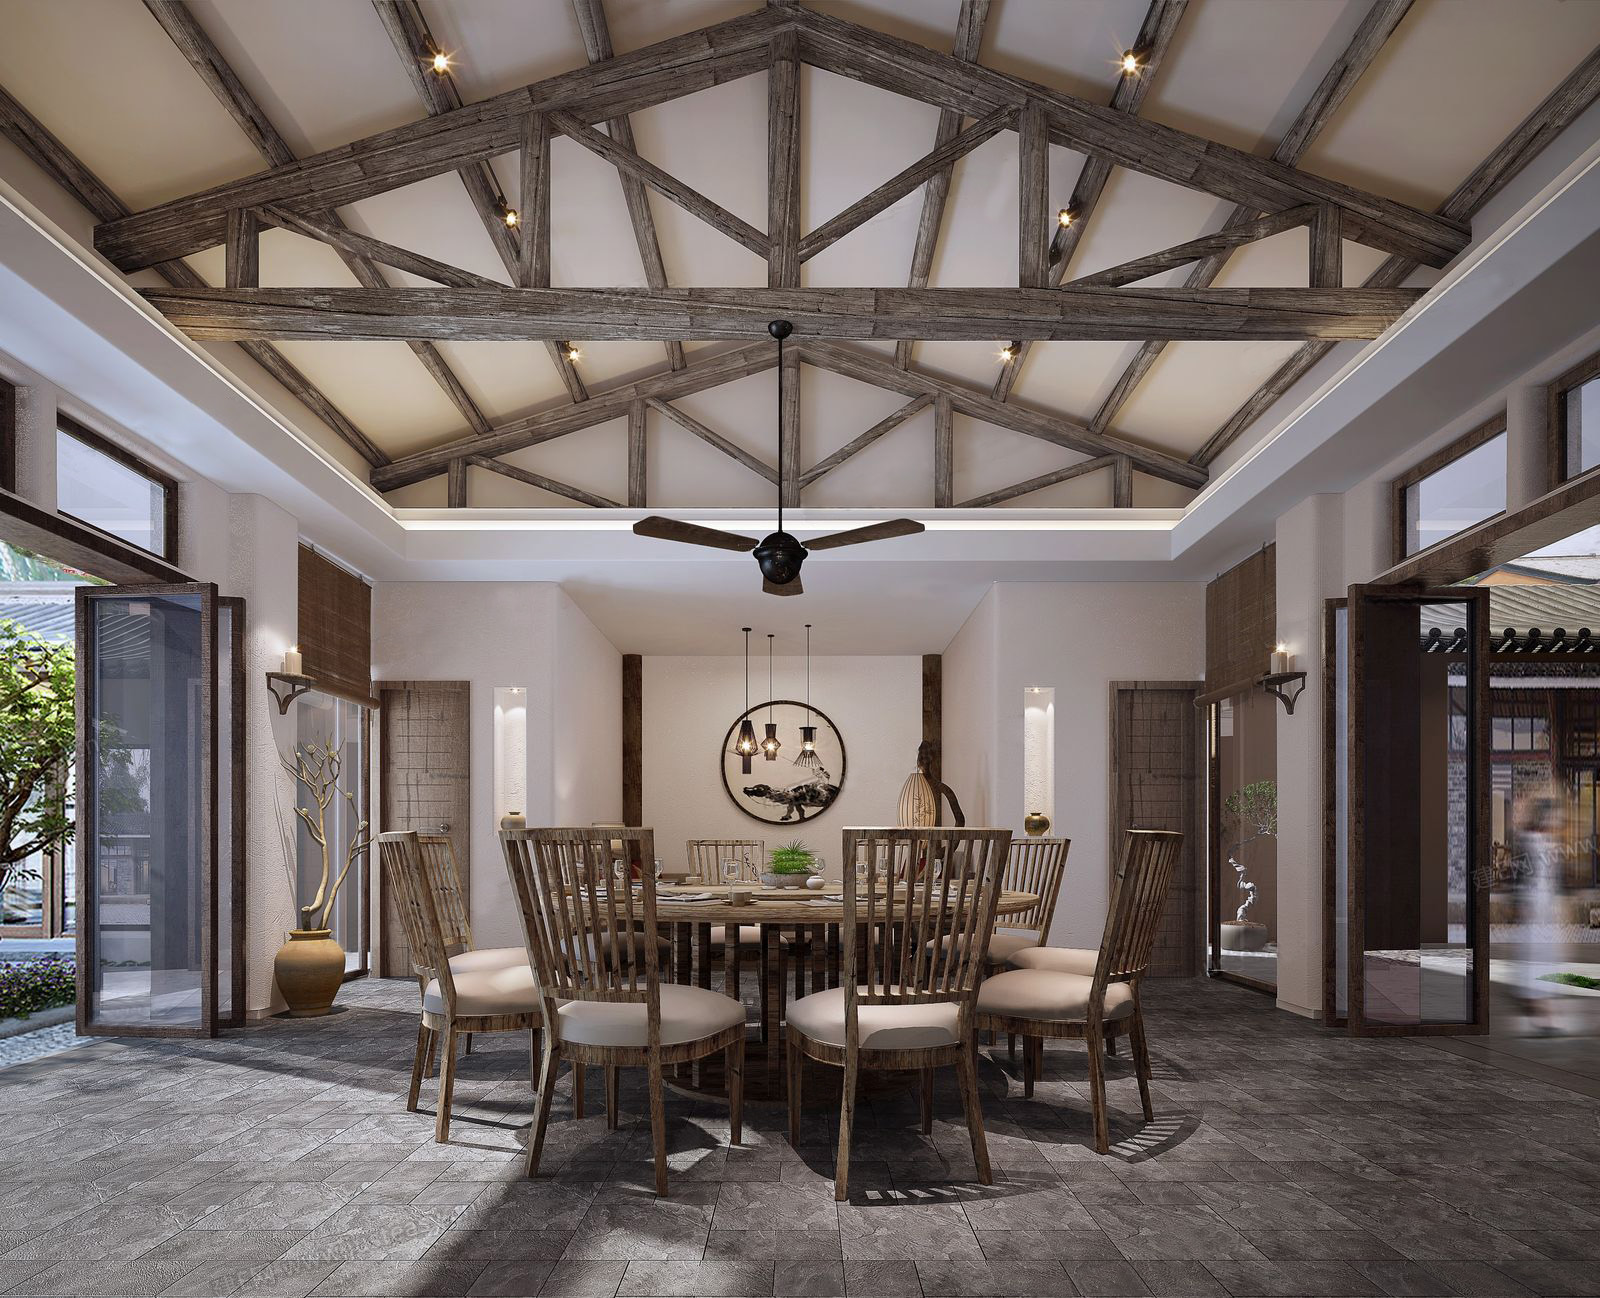 3dmax模型 中西餐厅咖啡厅茶楼店面loft工业风格3d室内模型素材 3D模型-第7张